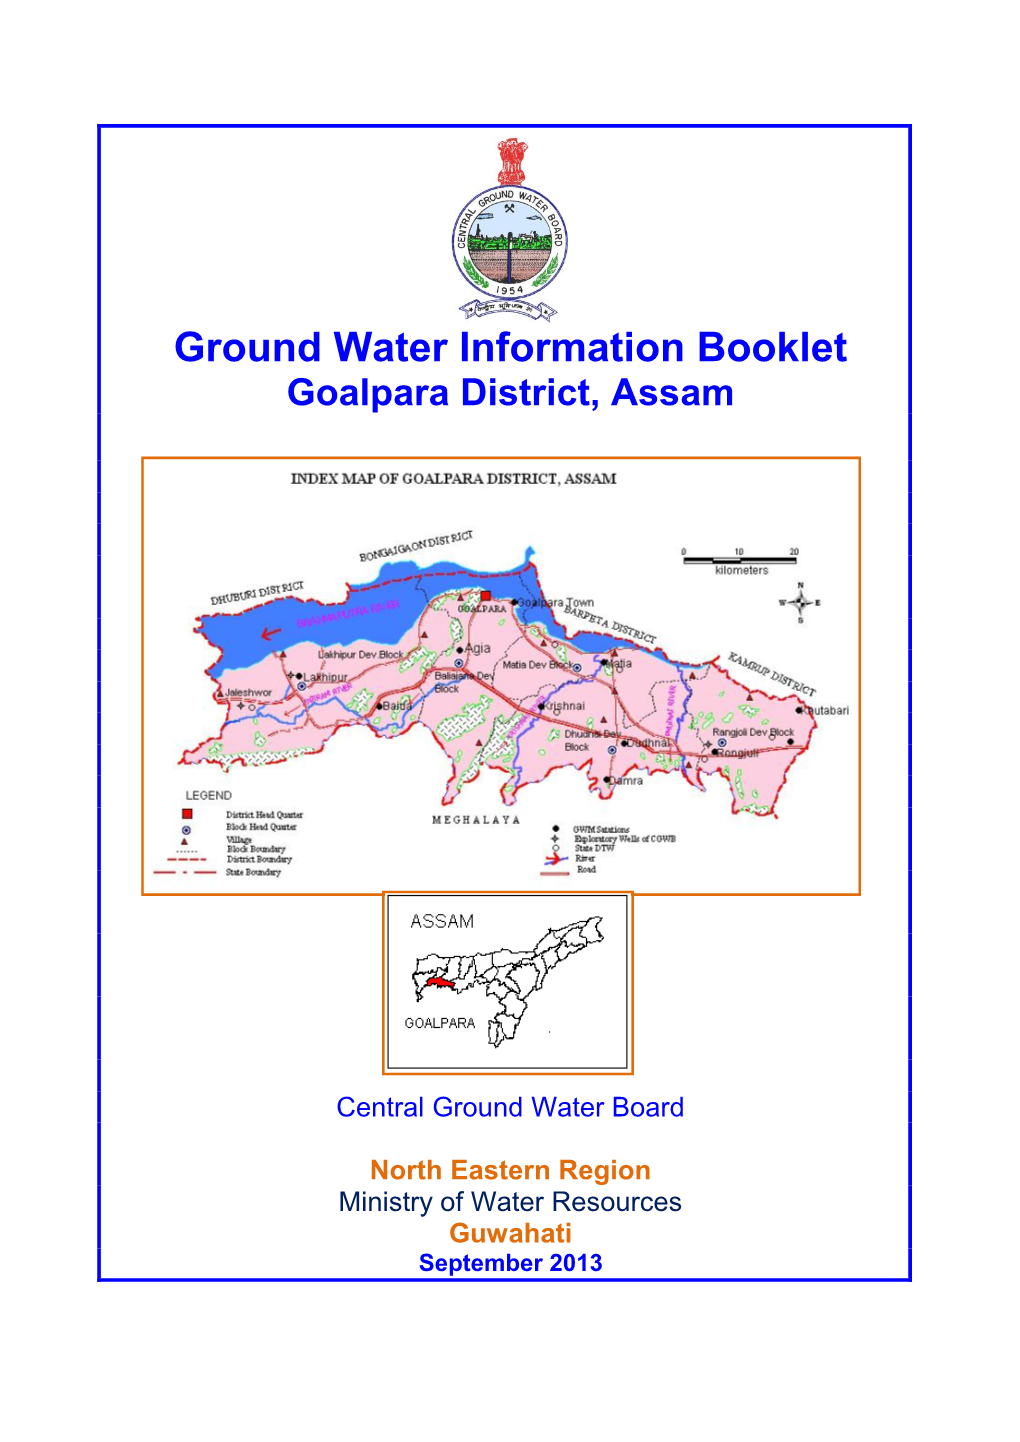 Goalpara District, Assam